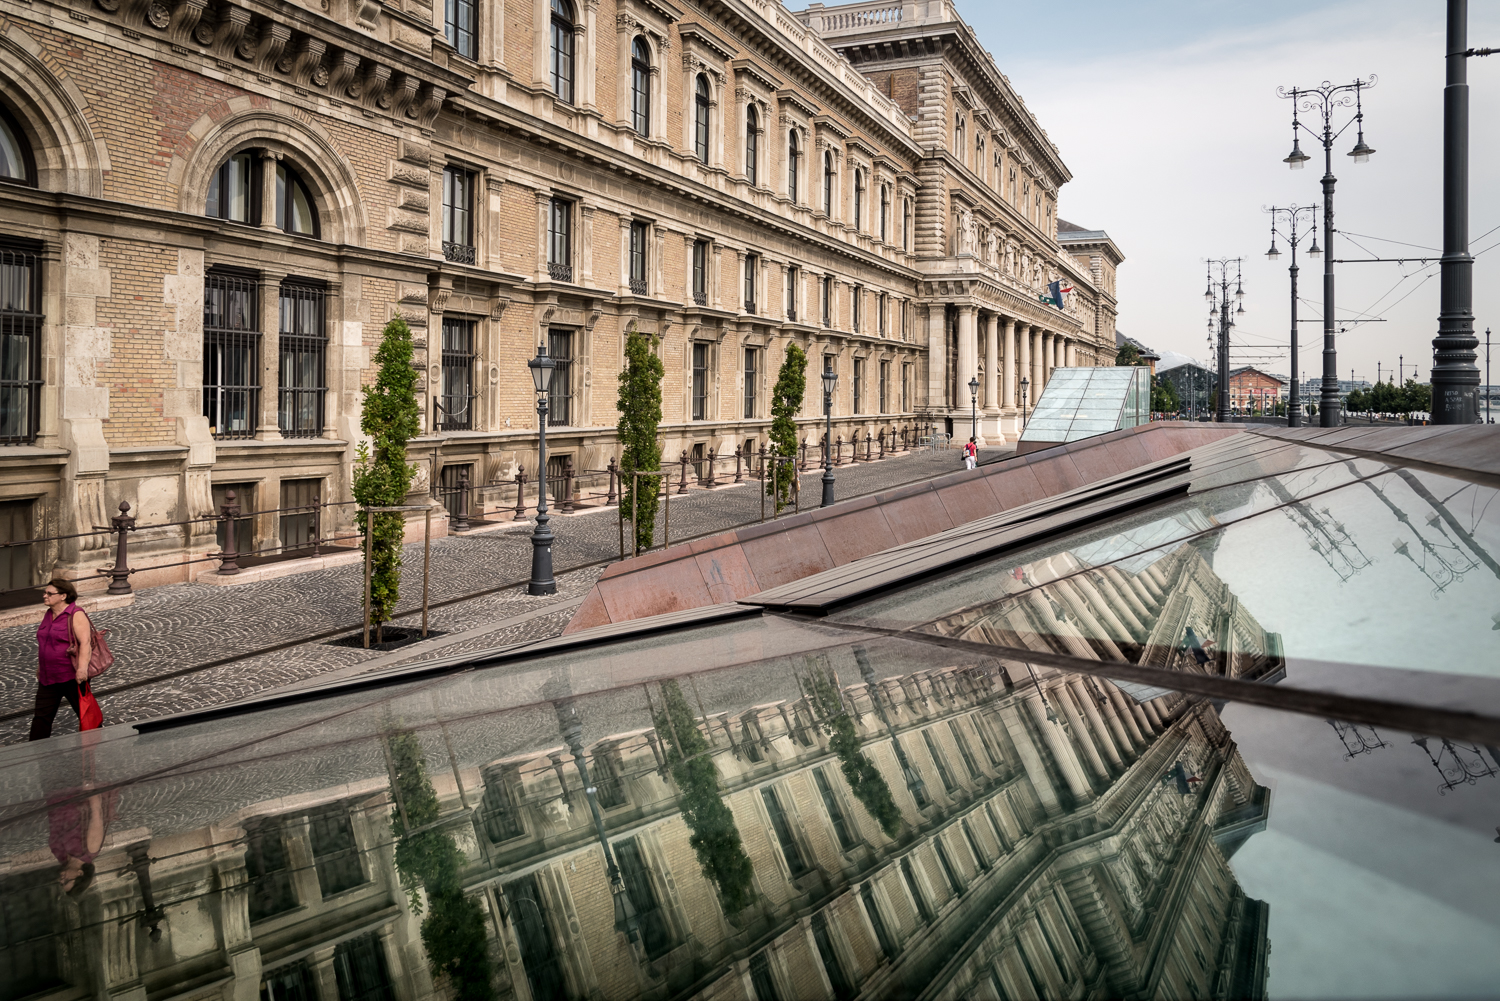 Micsoda fordulat! – funkciót váltott budapesti épületek (III. rész)